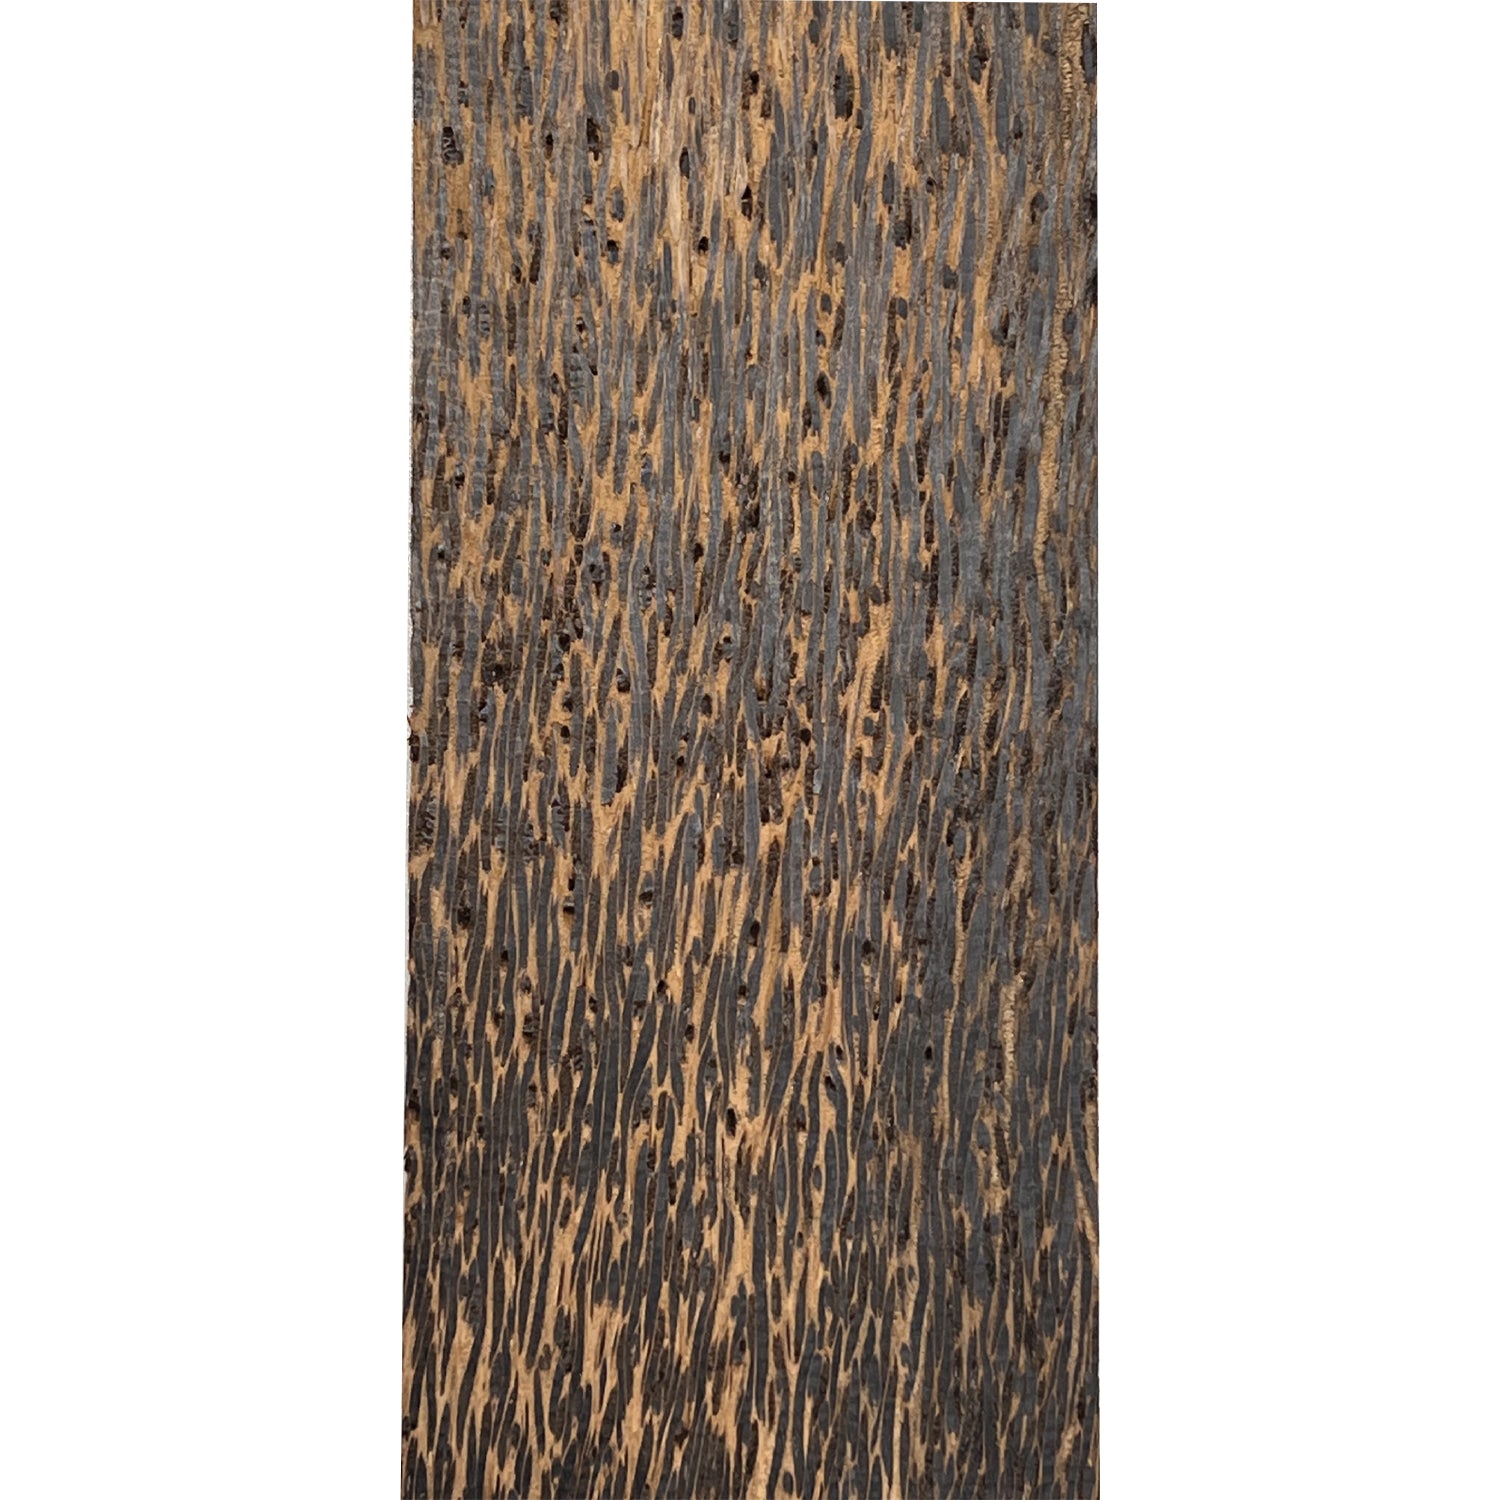 Tableros de madera finos de palma negra, artesanías de madera